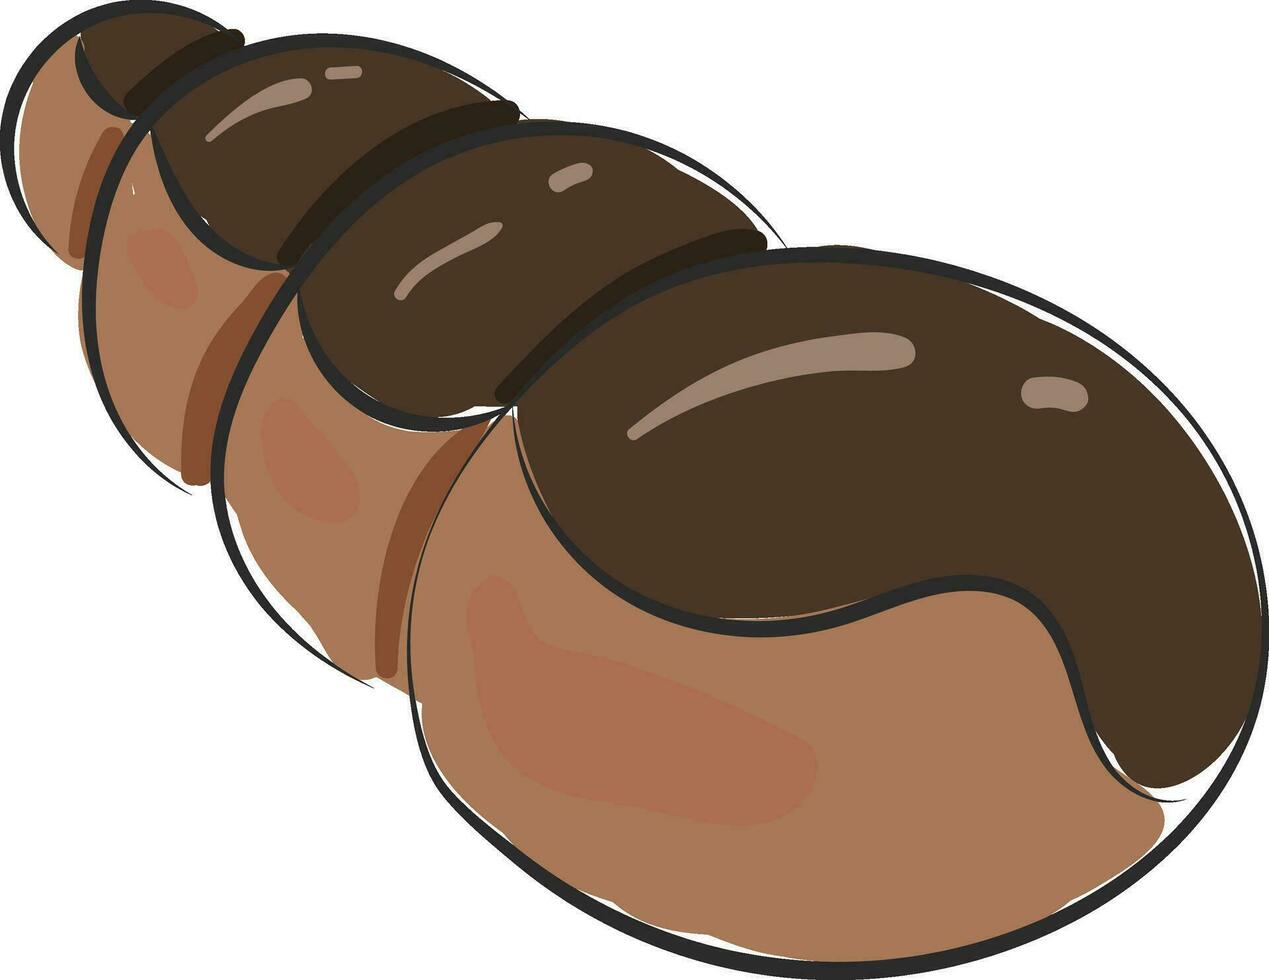 imagem do chocolate croissant, vetor ou cor ilustração.